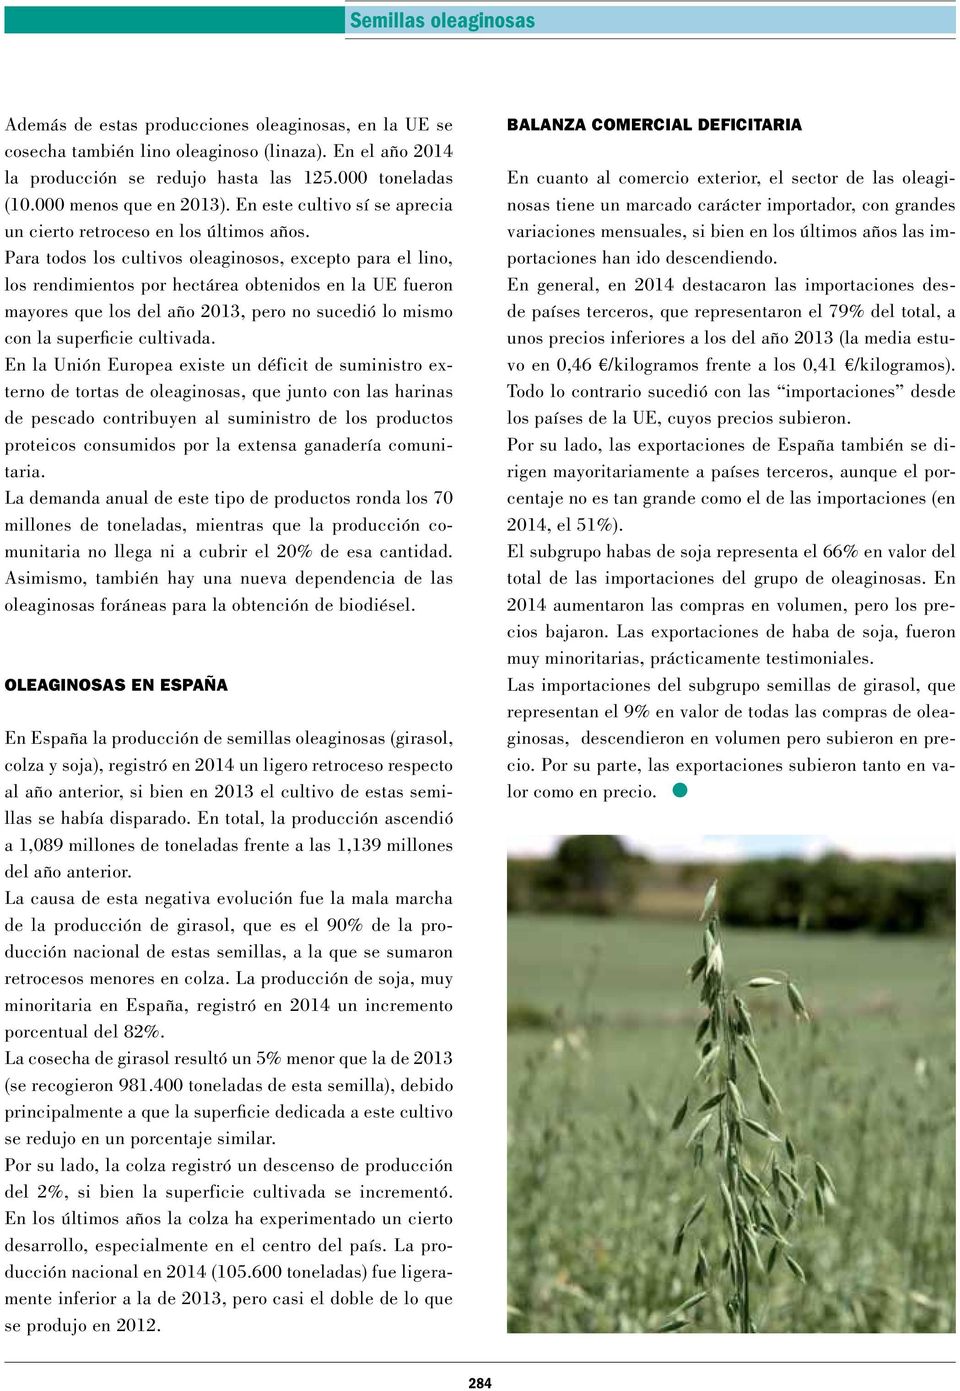 Para todos los cultivos oleaginosos, excepto para el lino, los rendimientos por hectárea obtenidos en la UE fueron mayores que los del año 2013, pero no sucedió lo mismo con la superficie cultivada.